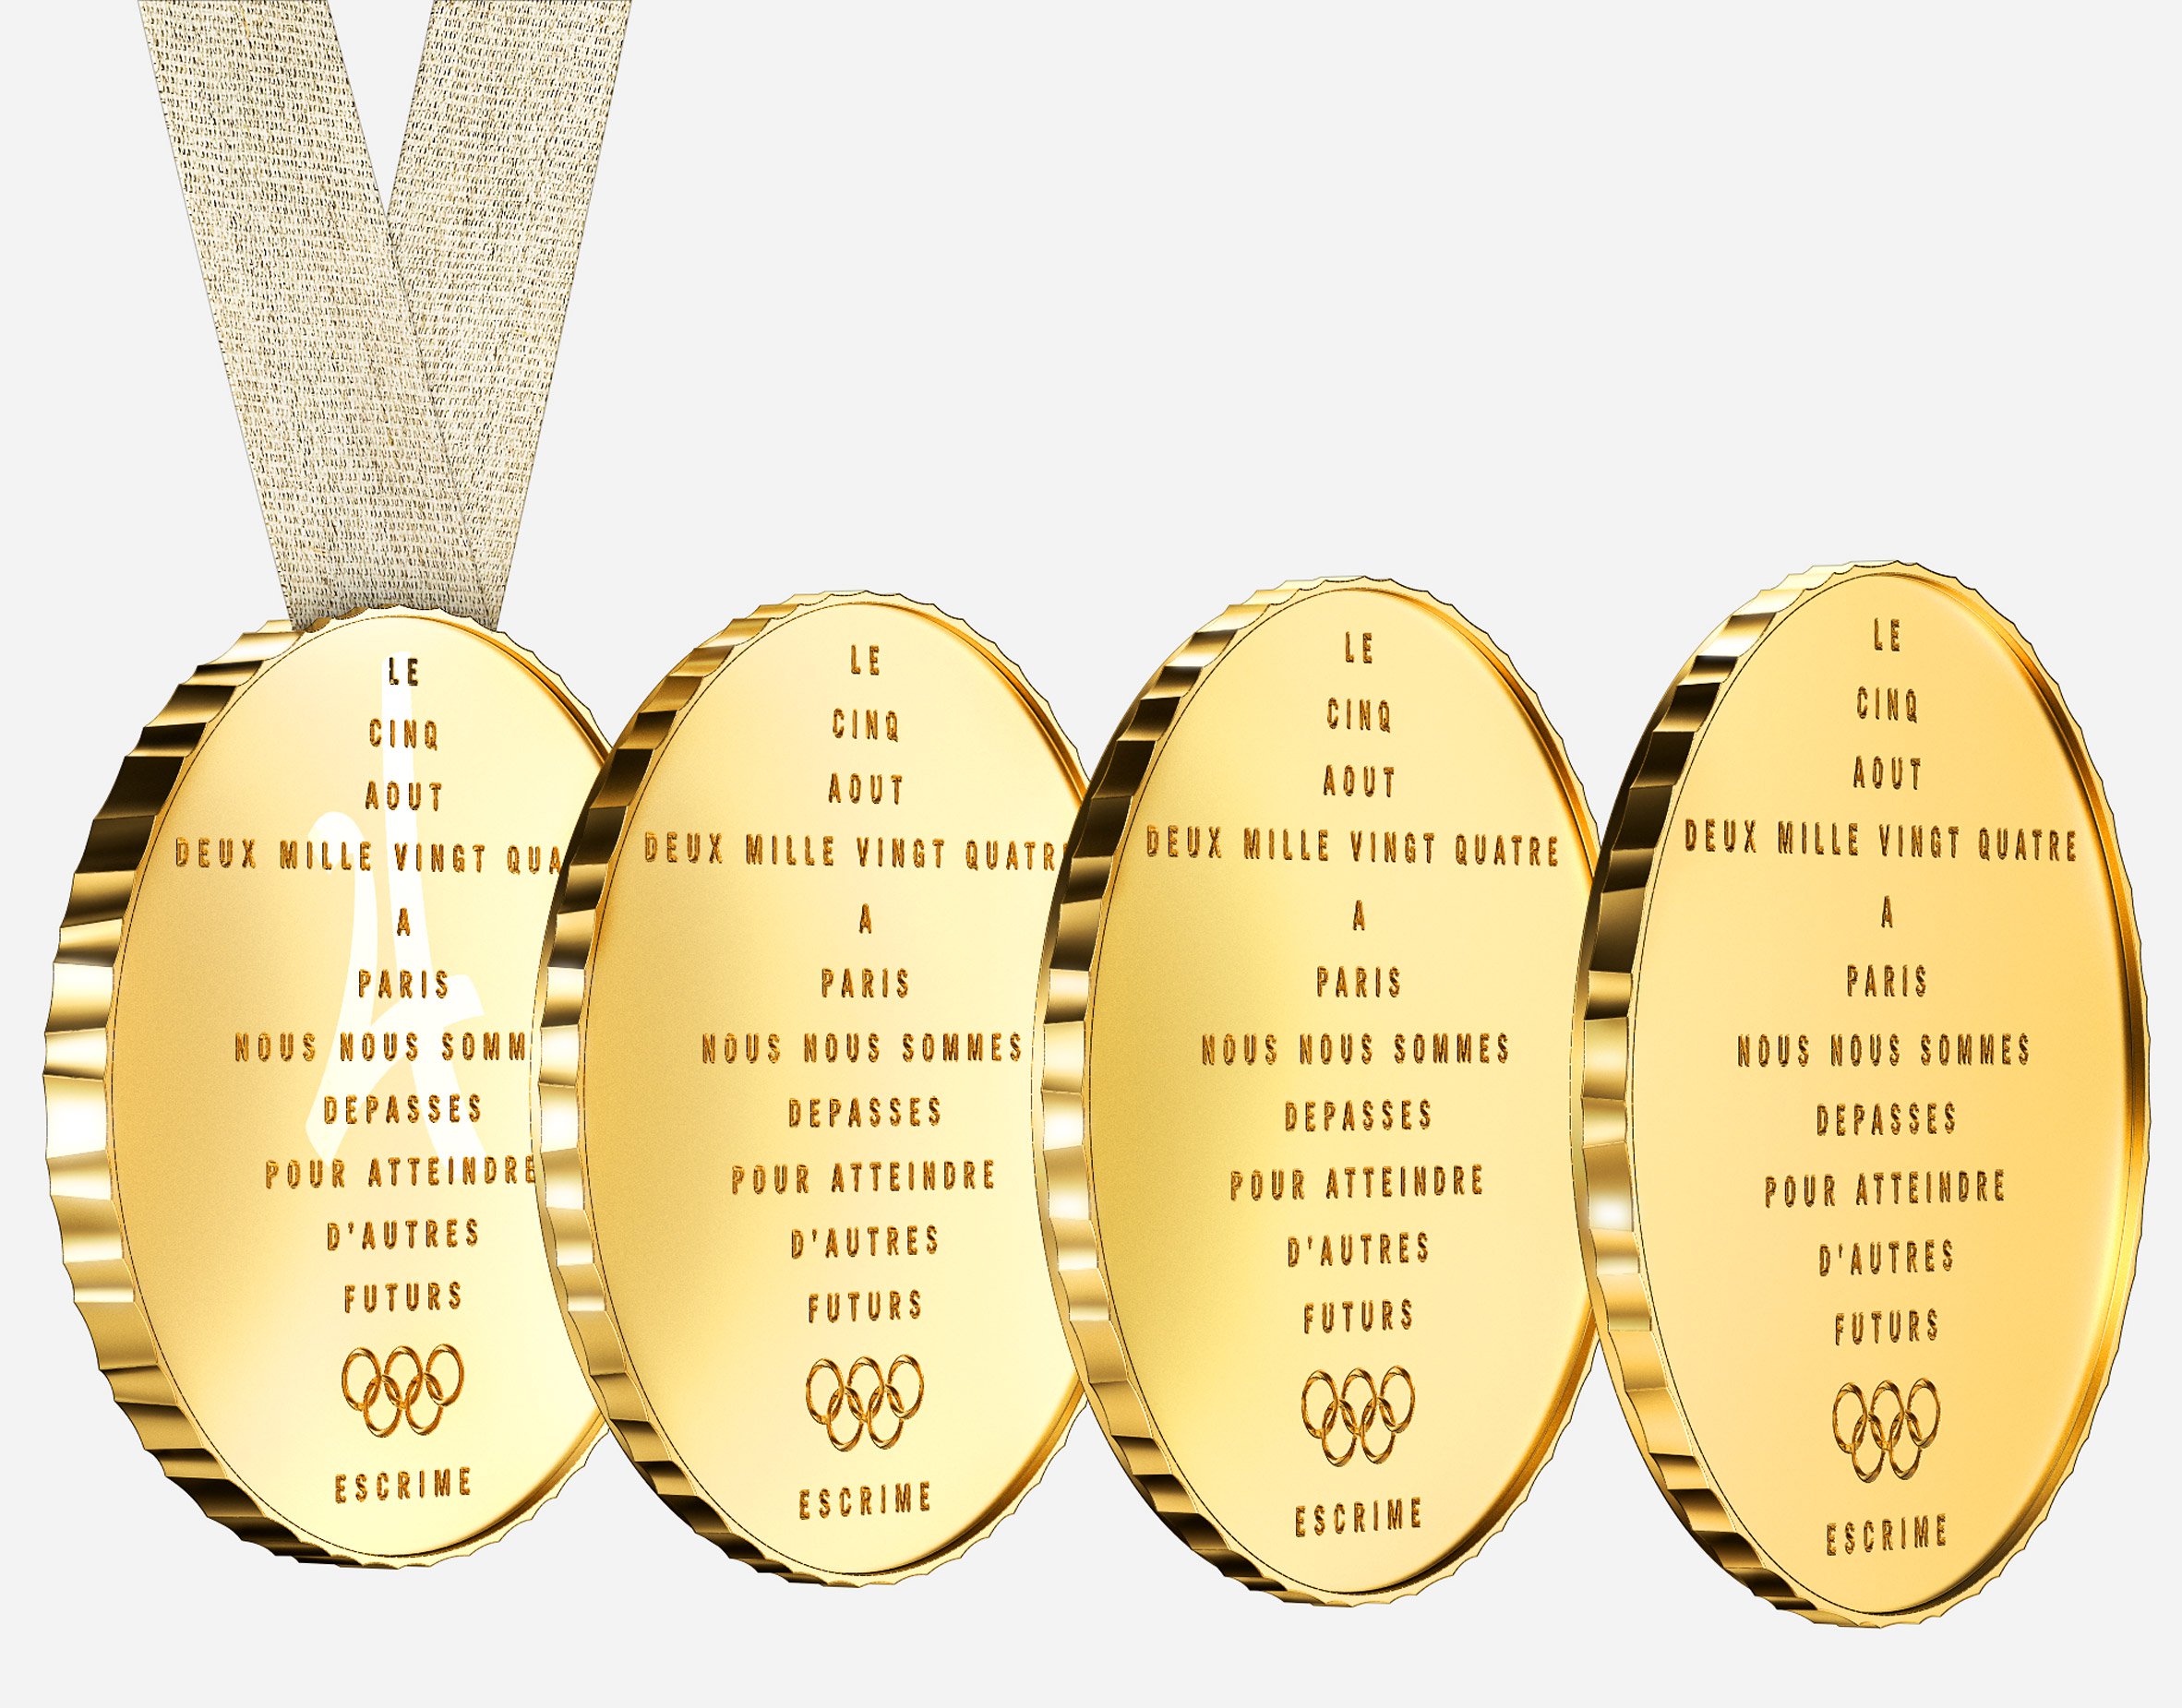 2024 Paris Olympic Medals Voici Un Pour Tu, Pour Tu, et Pour Tu The